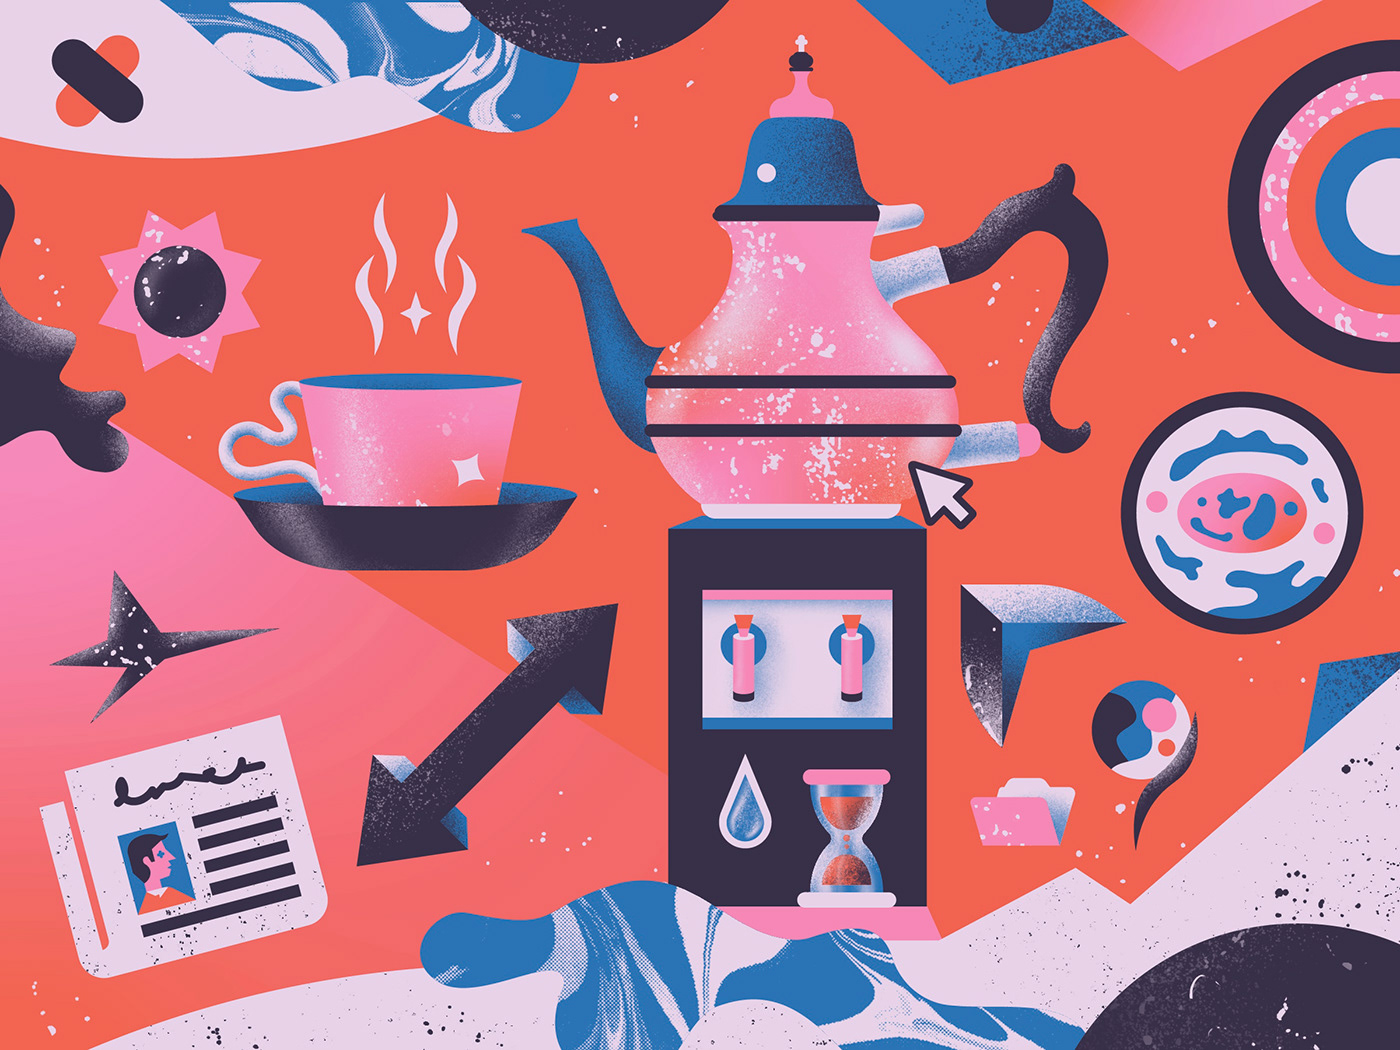 Digital Art  editorial Editorial Illustration ILLUSTRATION  Illustrator magazine Procreate tea teapot textures